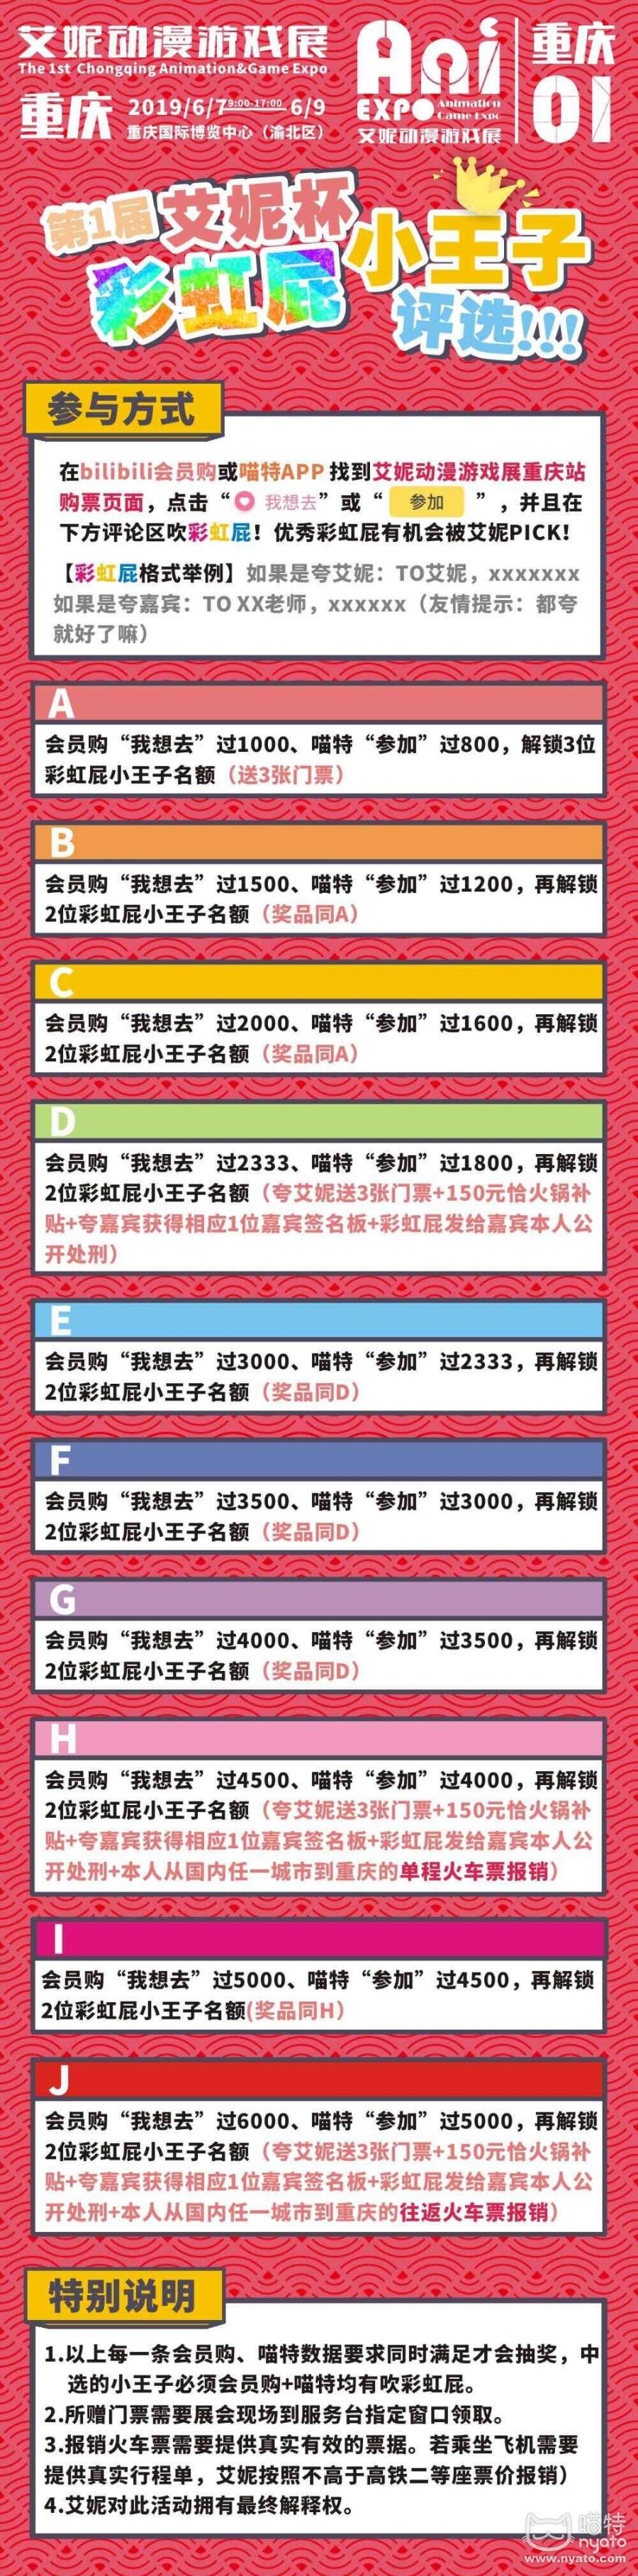 2019重庆艾妮动漫游戏展时间、地点、门票